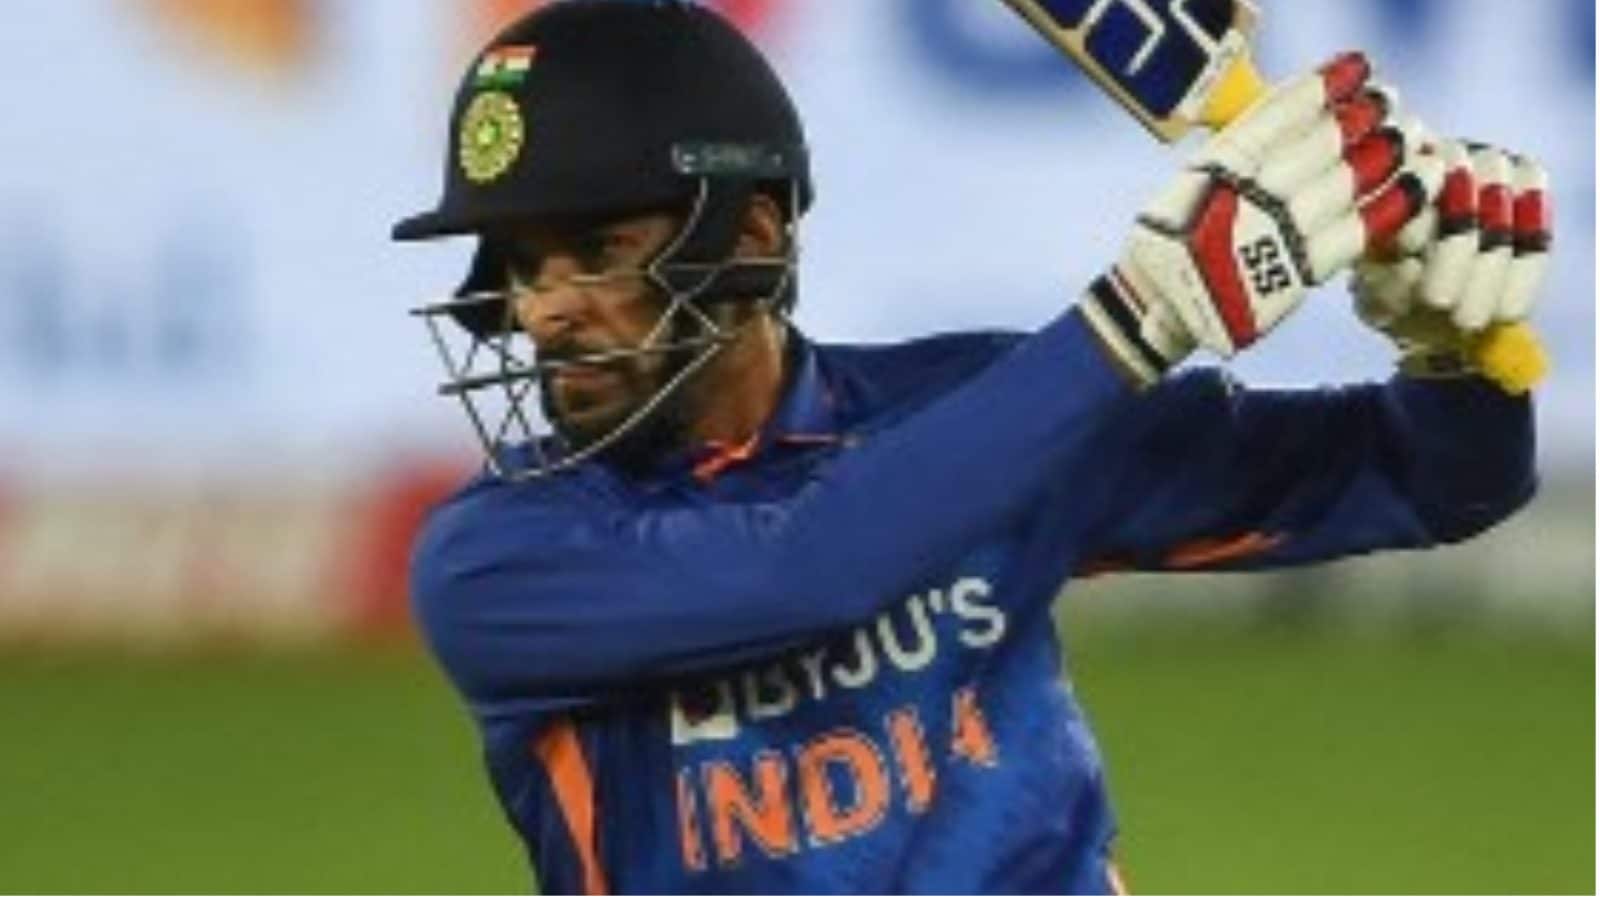 ‘इंडिया नीड समबडी लाइक हिम डाउन द ऑर्डर’: संजय मांजरेकर ने टी 20 विश्व कप के लिए दीपक हुड्डा का समर्थन किया